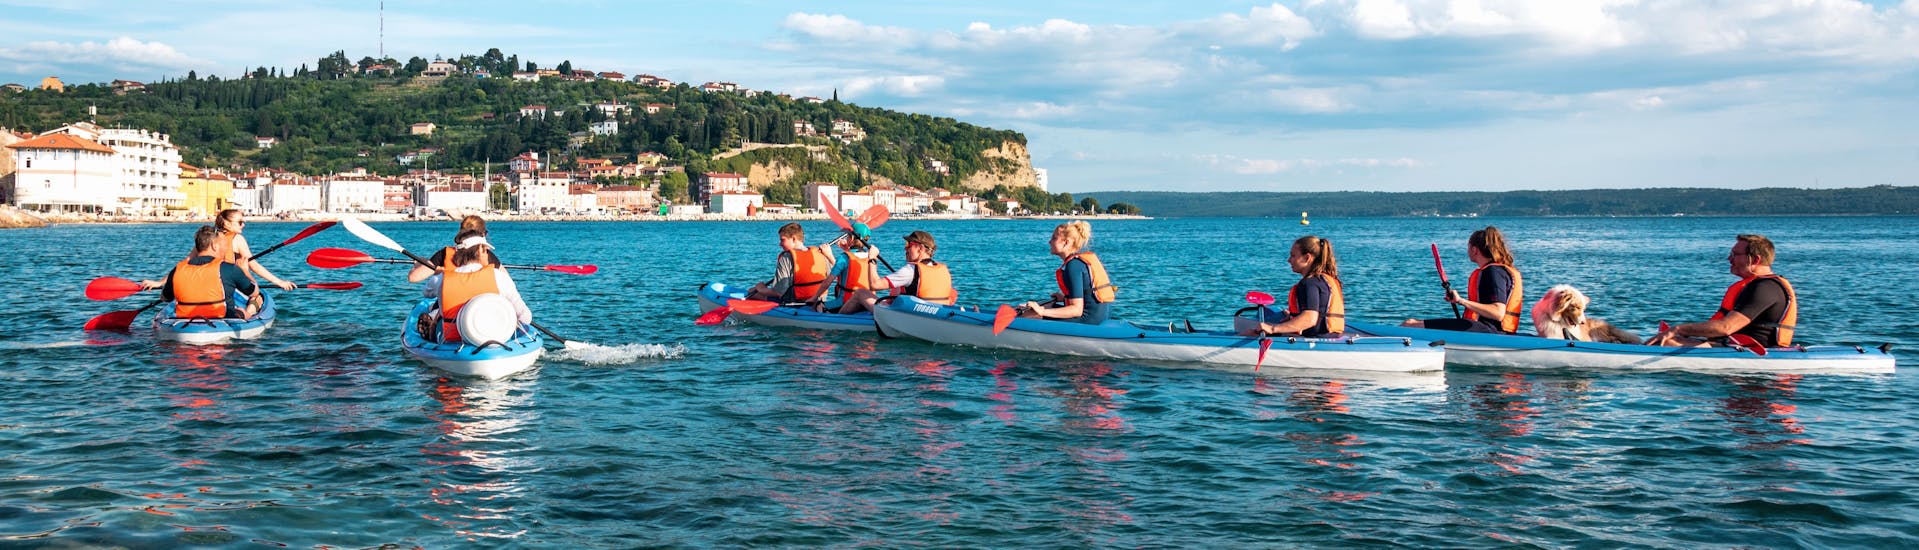 Menschen paddeln in ihren Kajaks während ihrer Morgen-Kajaktour auf dem Meer ab Piran.